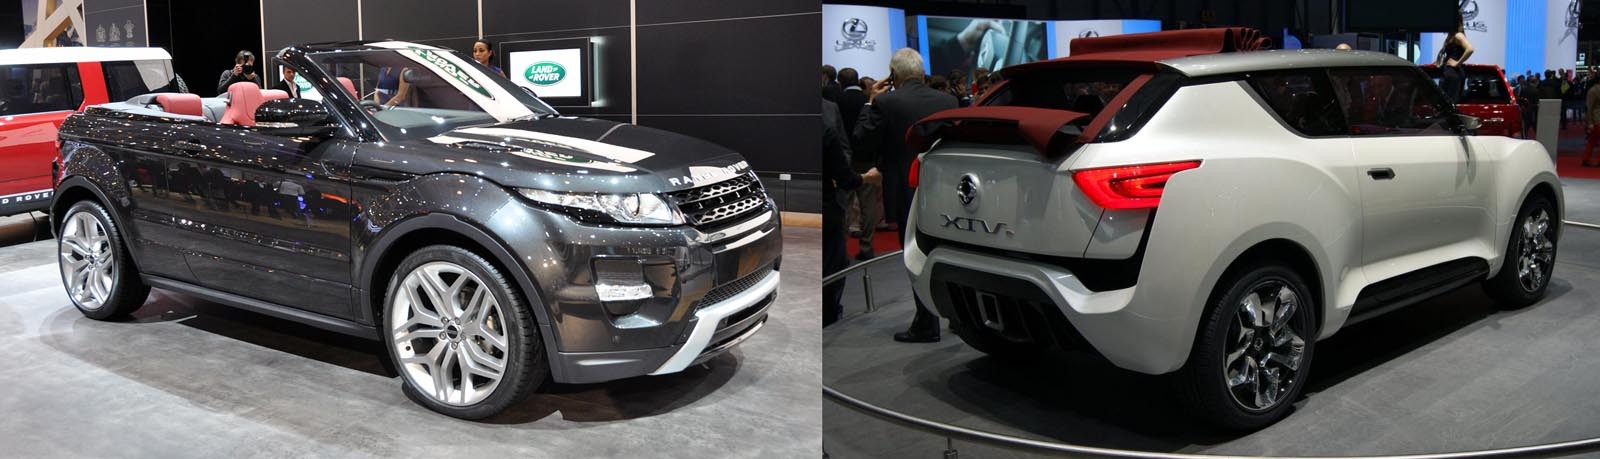 Range Rover Evoque vs. SsangYong XIV-2